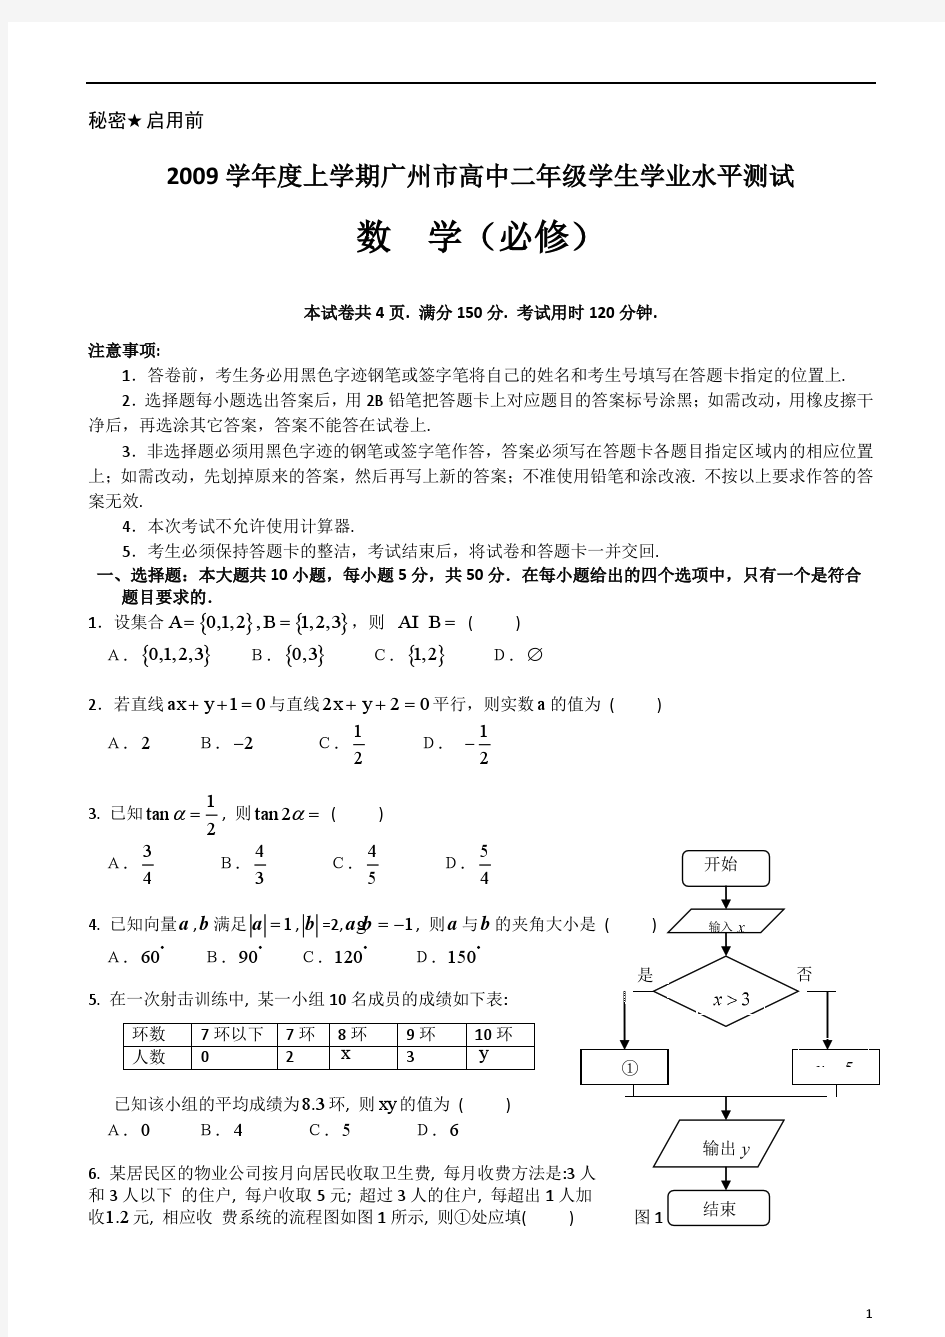 2009-2014年度上学期广州市高中二年级数学学生学业水平测试试题及答案汇编